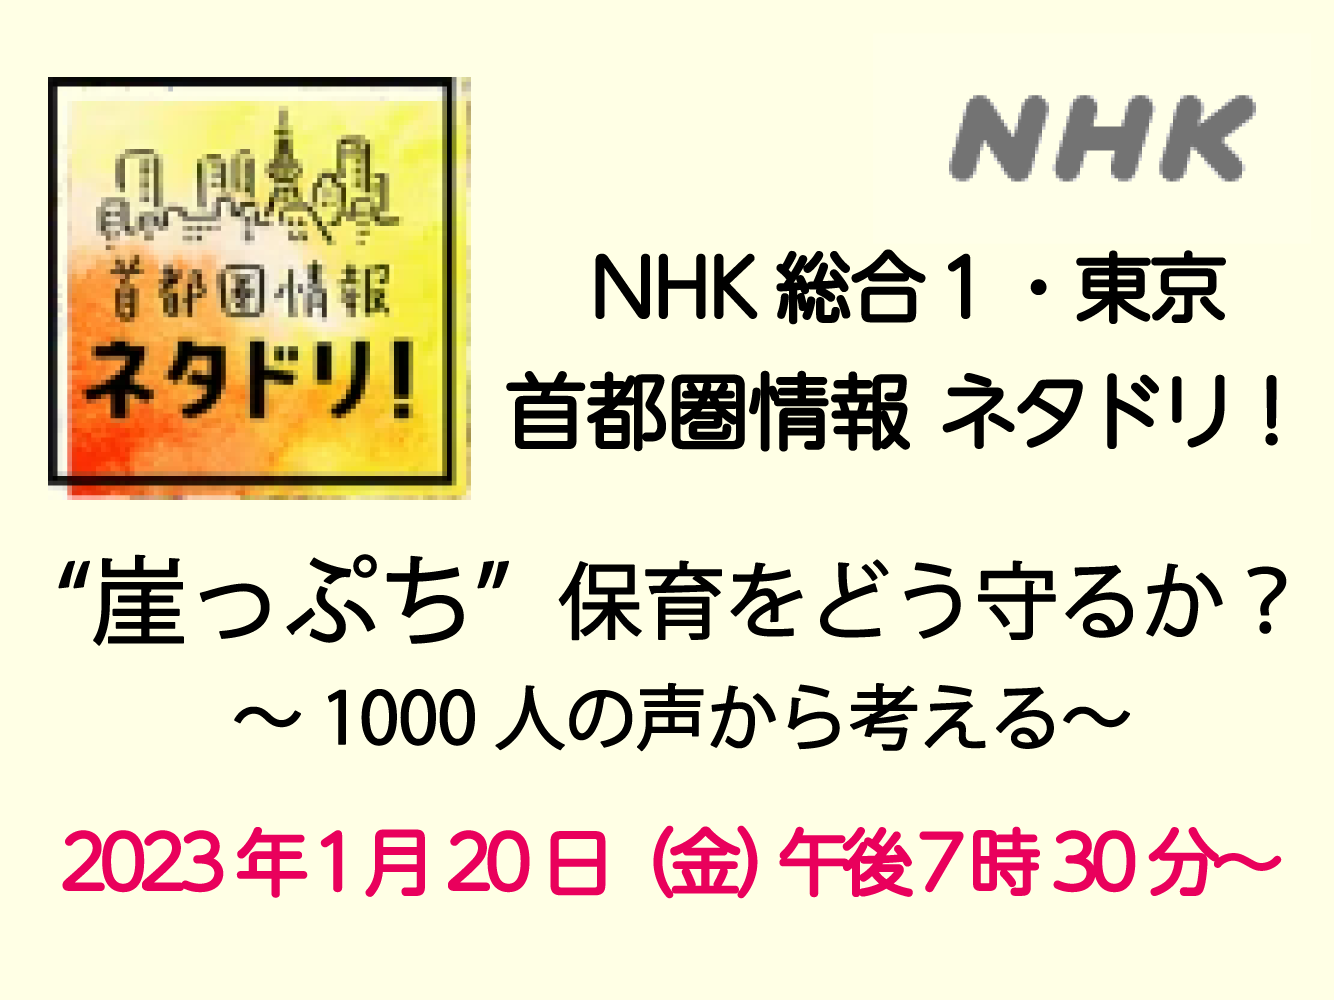 【テレビ】NHK『首都圏情報 ネタドリ！』にて風の森が取り上げられます